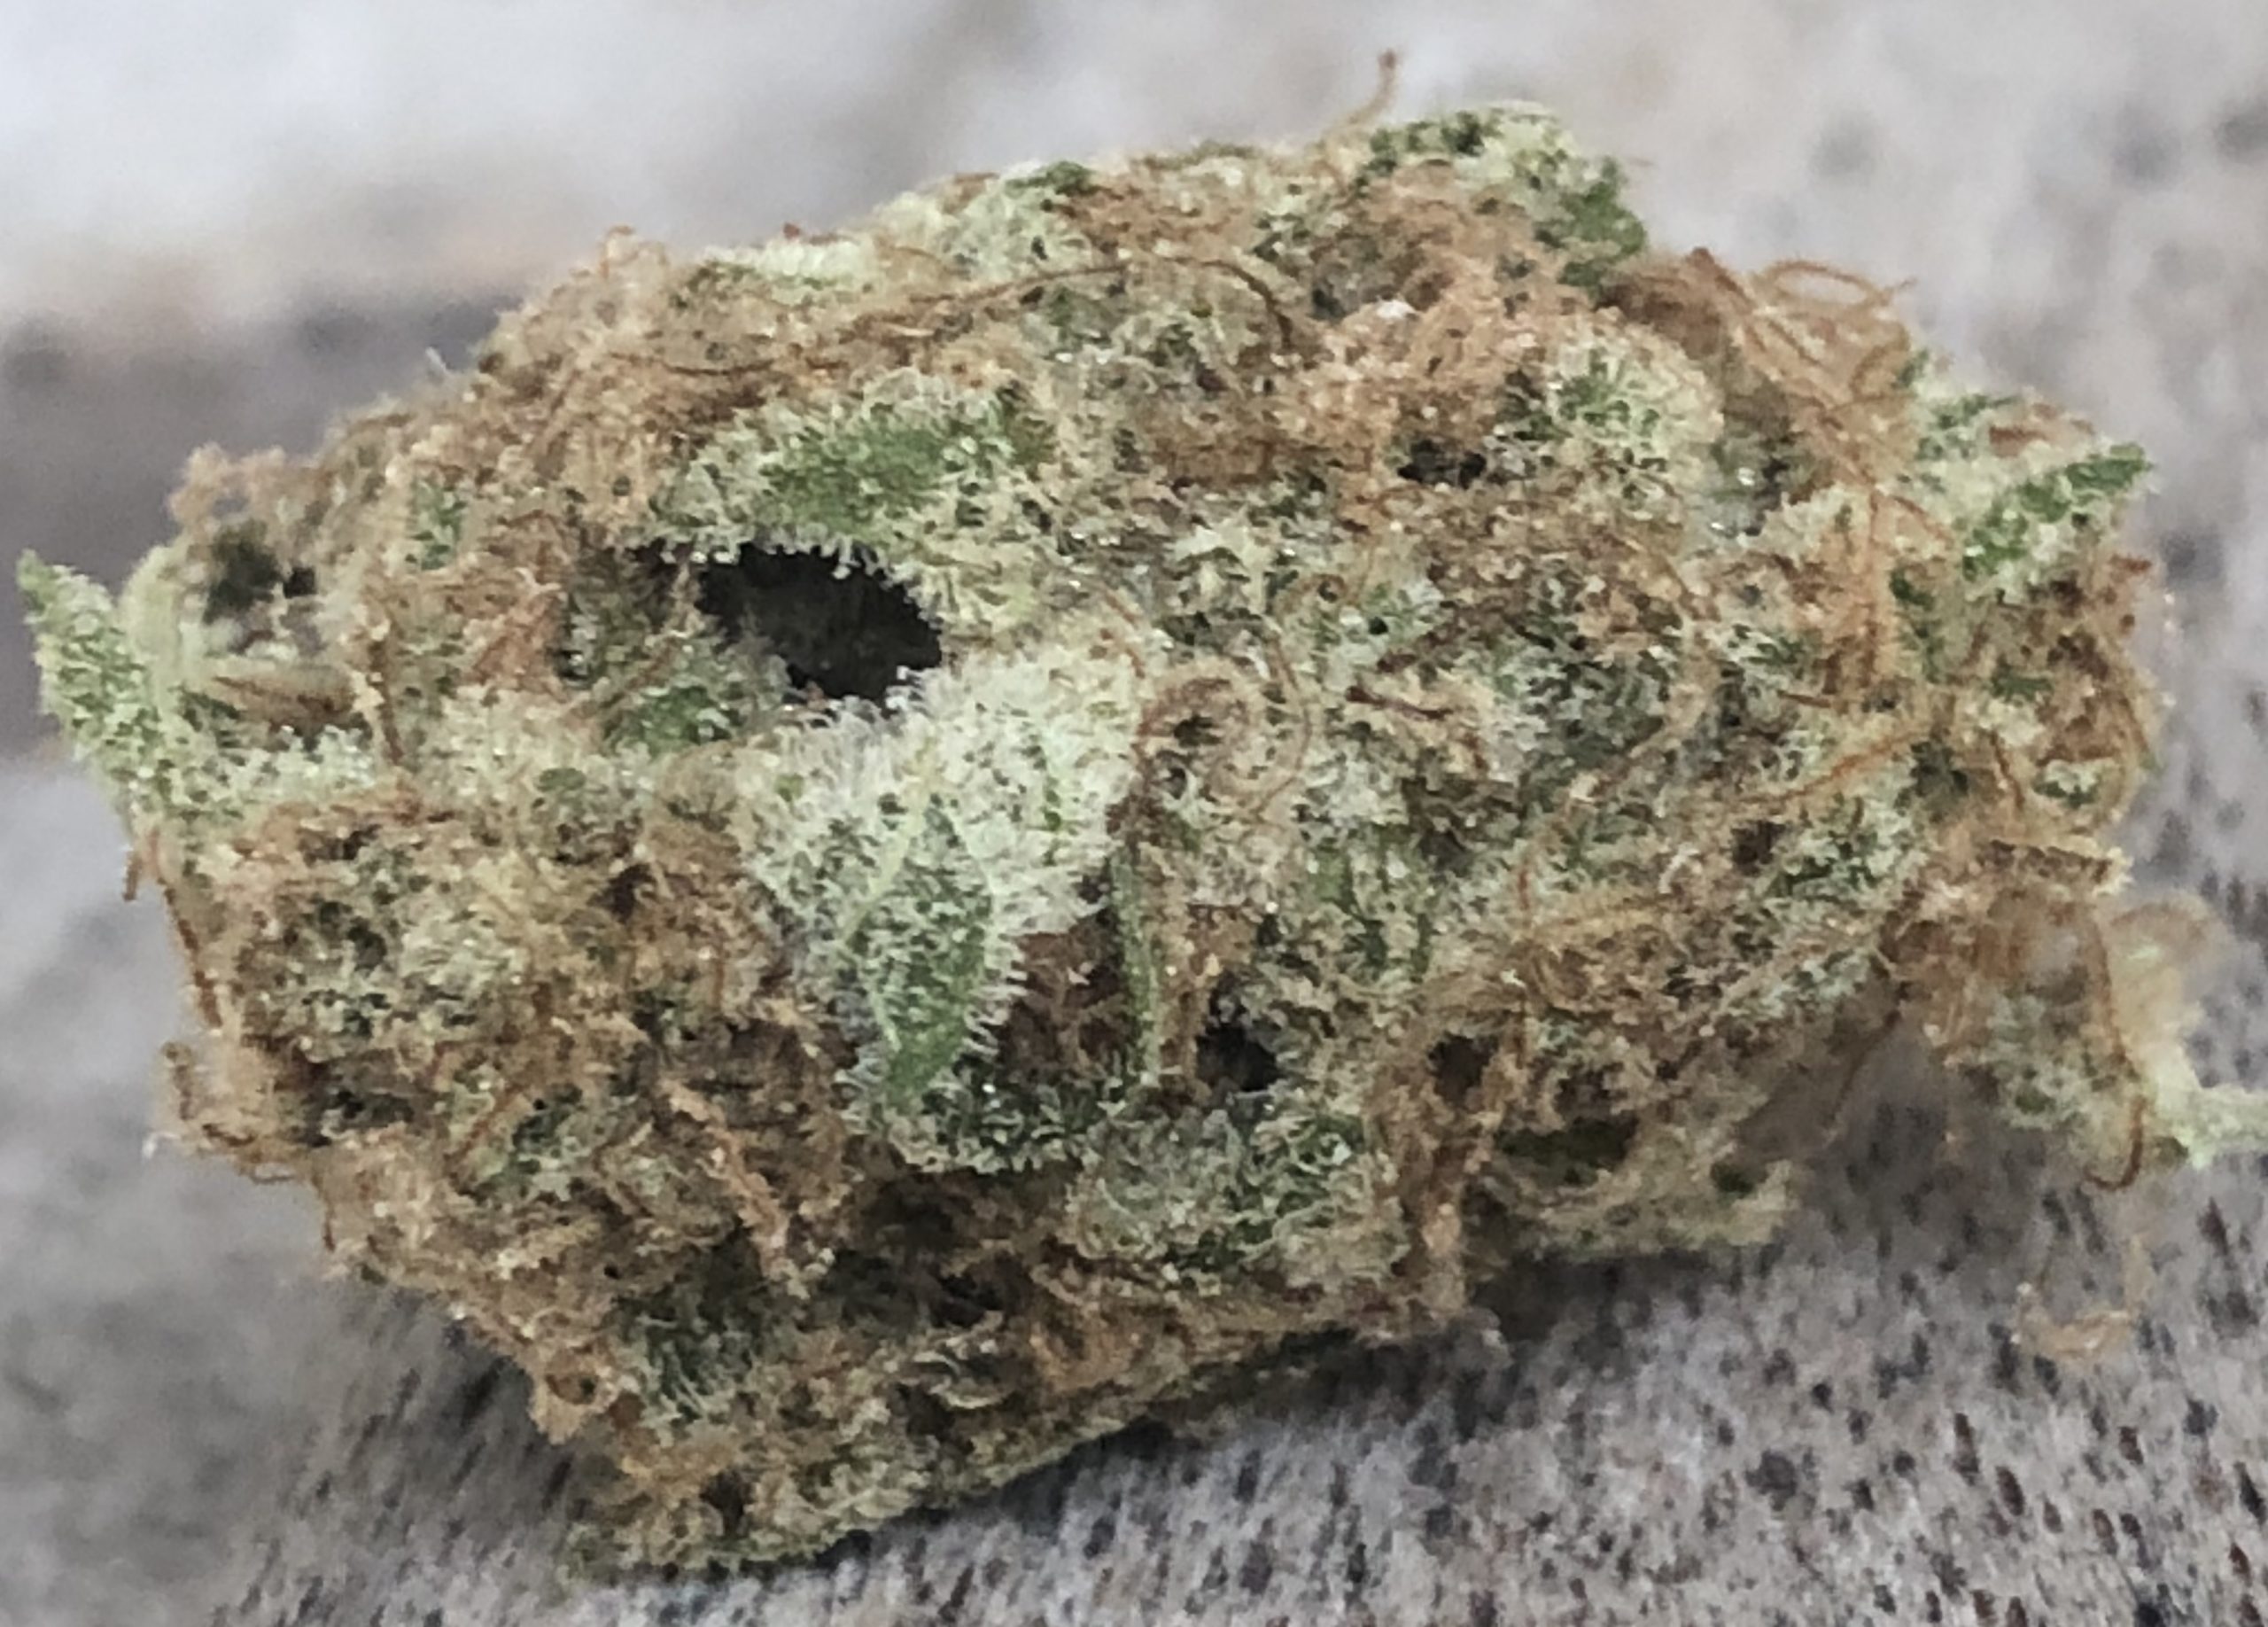 marijuana close up shot